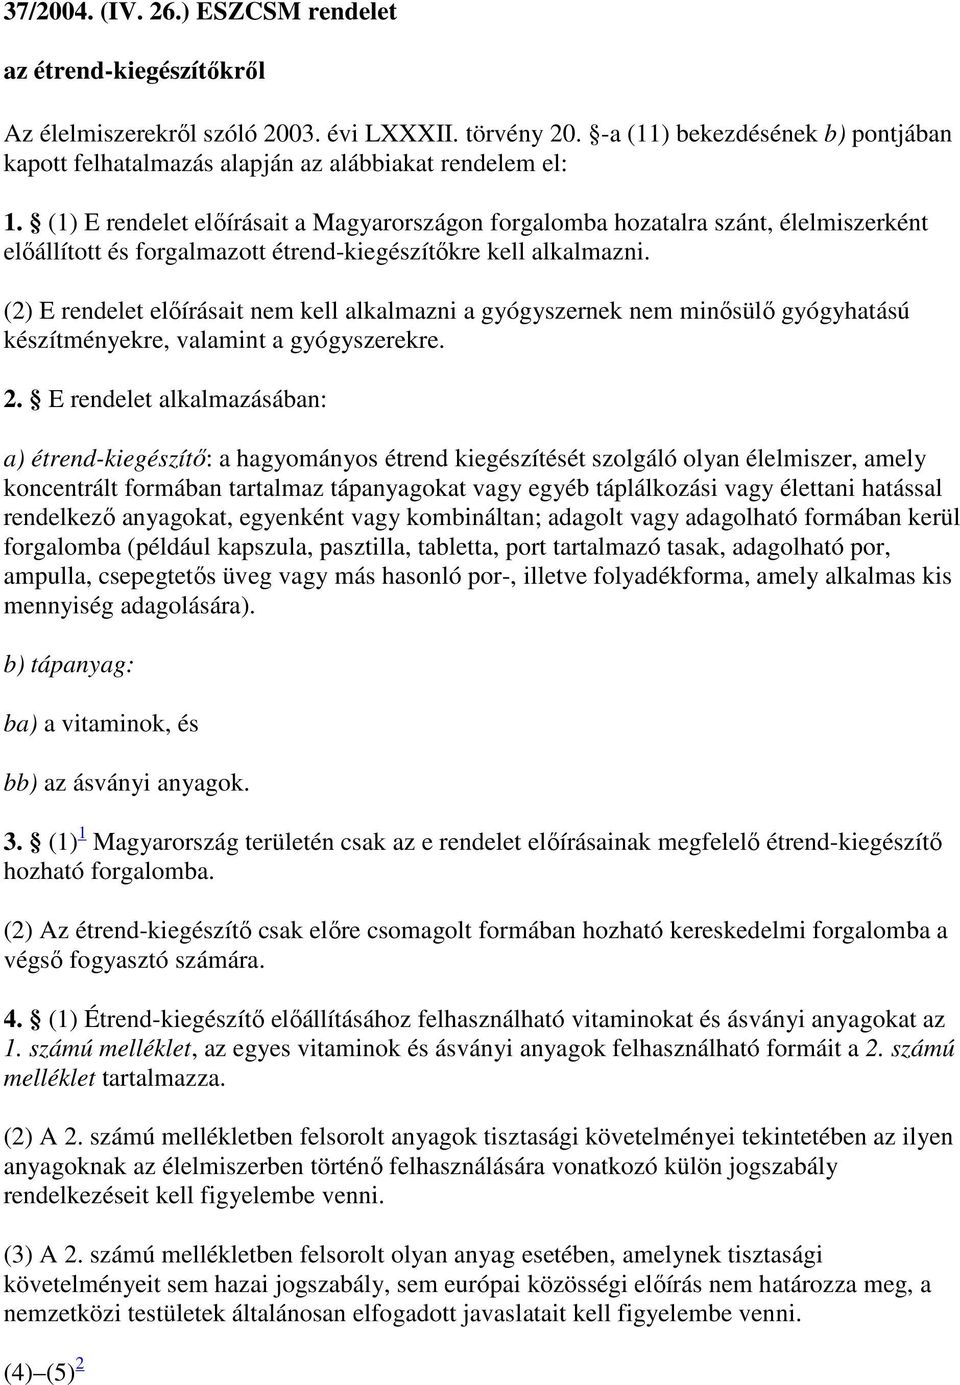 37/ (IV. ) ESZCSM rendelet. az étrend-kiegészítőkről - PDF Free Download